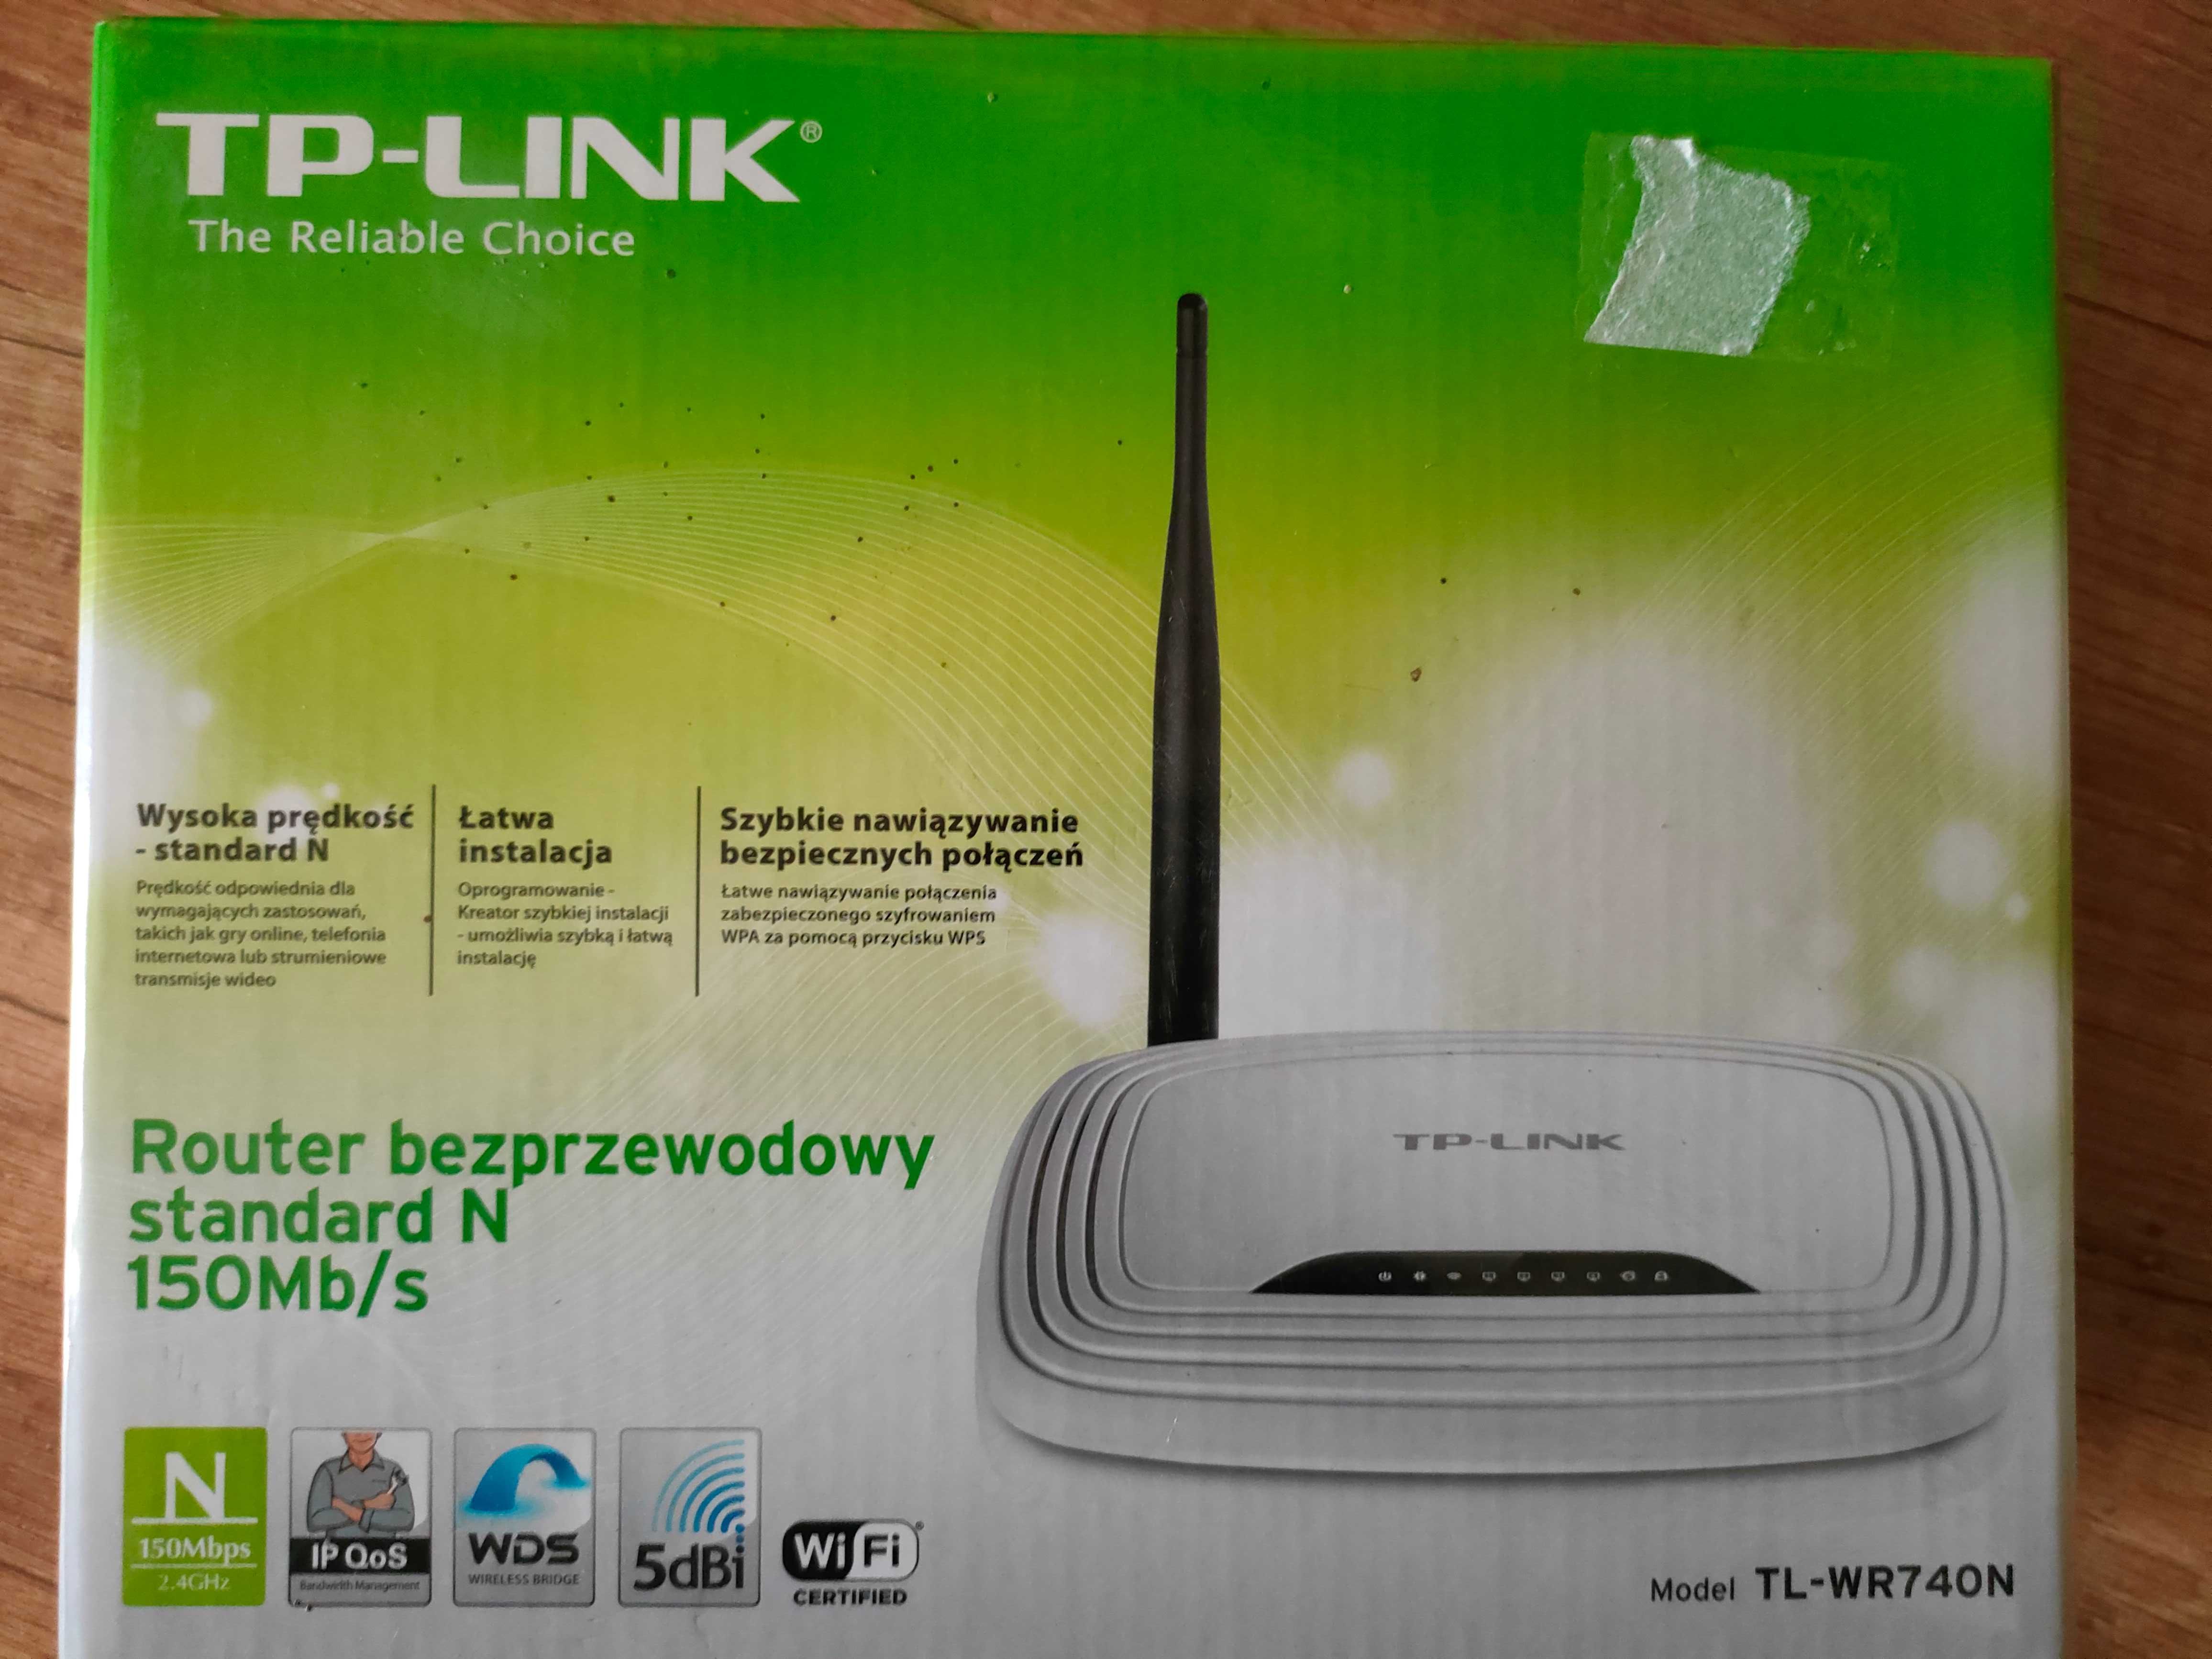 TP-LINK router bezprzewodowy wi-fi